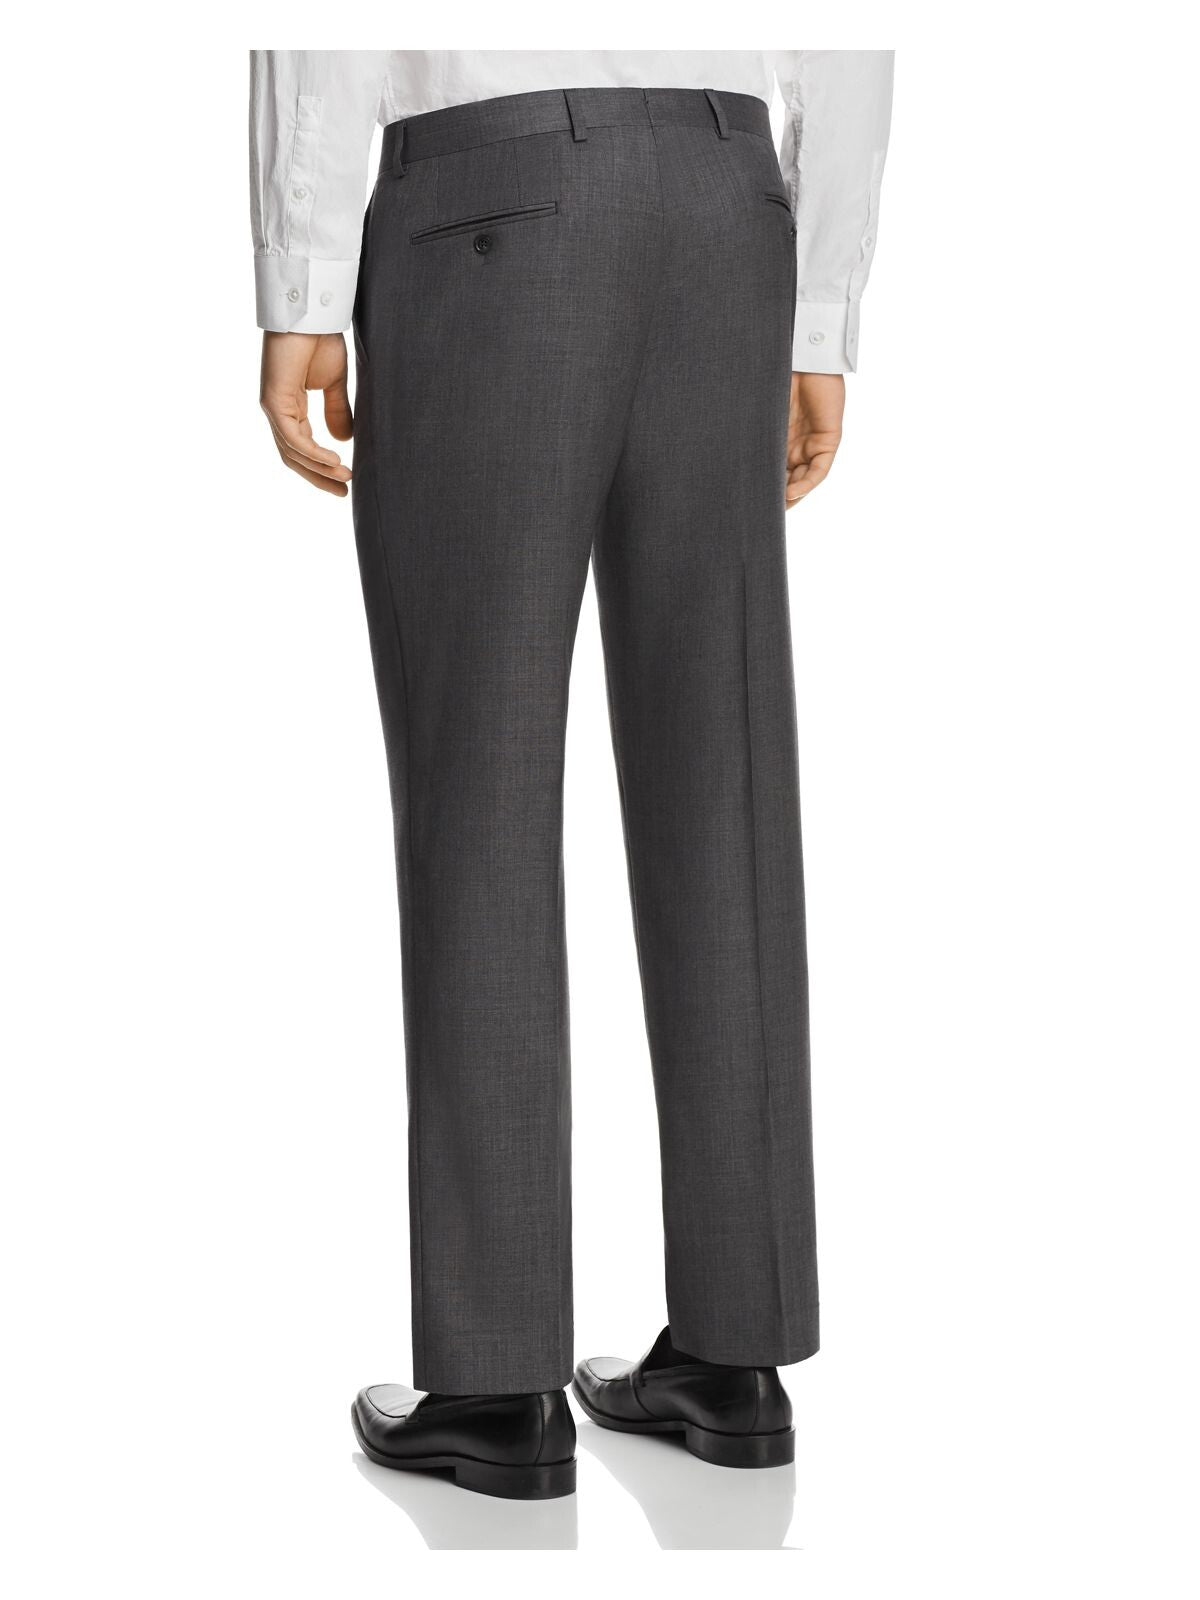 MICHAEL KORS Mens Gray Flat Front, Stretch, Classic Fit Suit Separate Pants 34W/ 30L